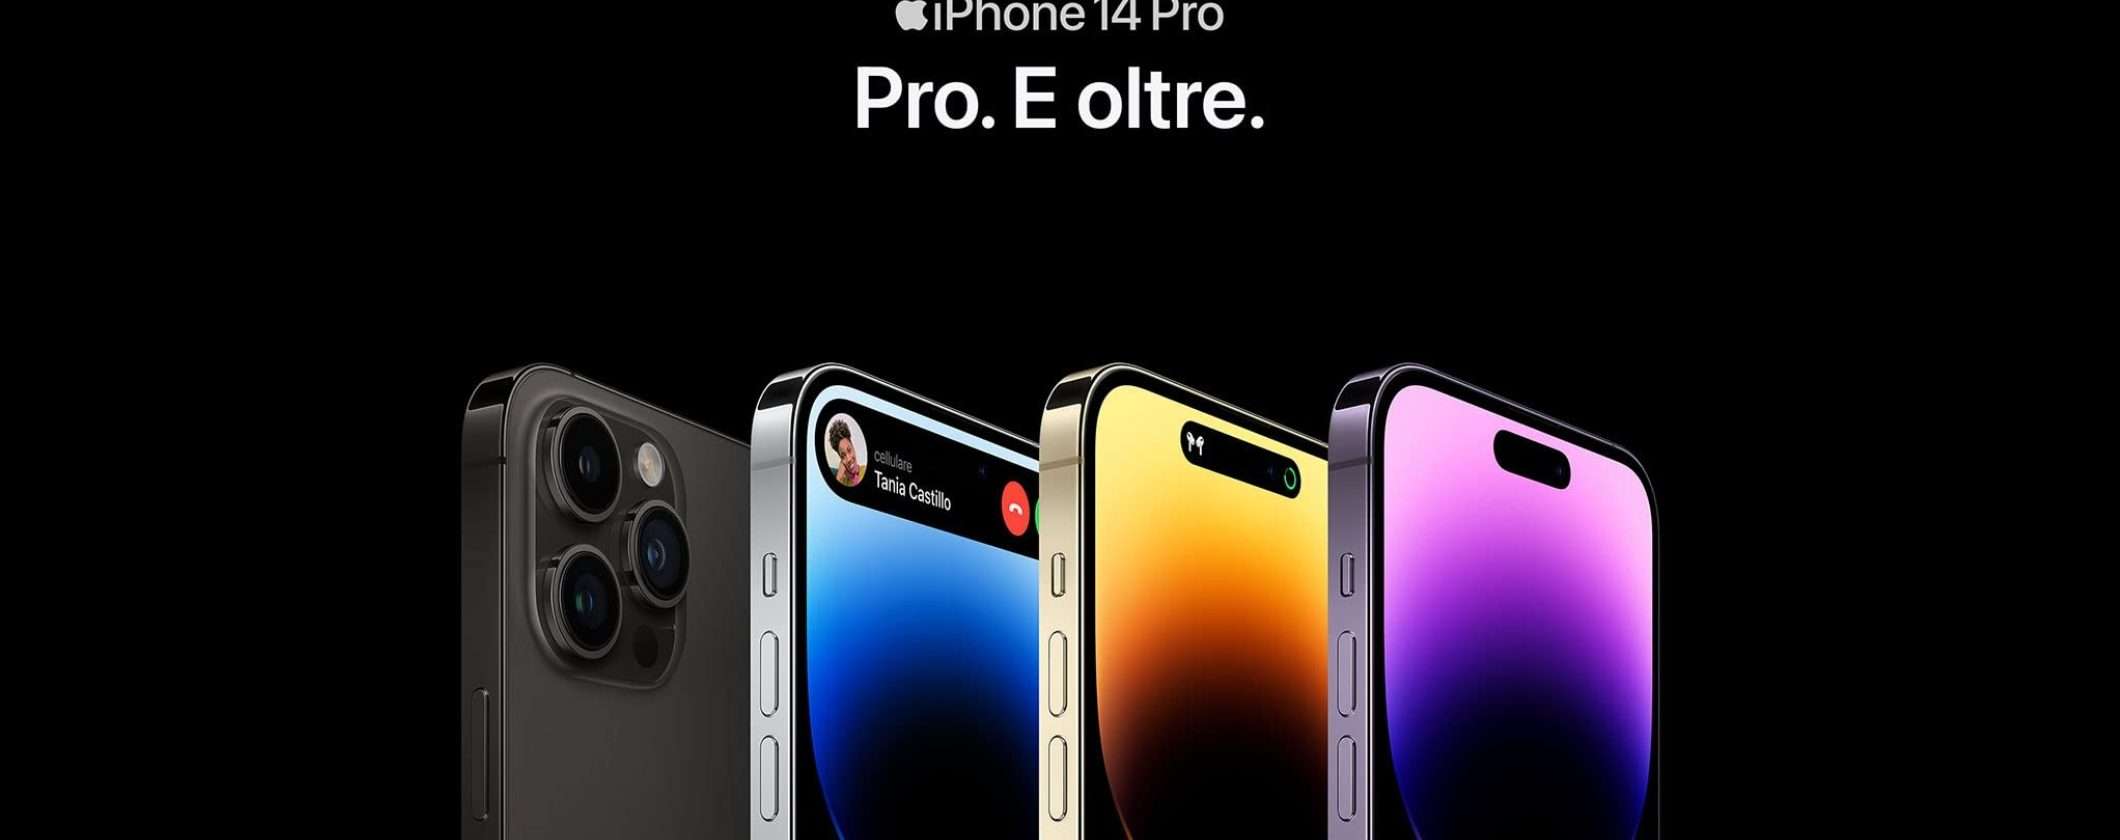 iPhone 14 Pro a un prezzo SENSAZIONALE su Amazon